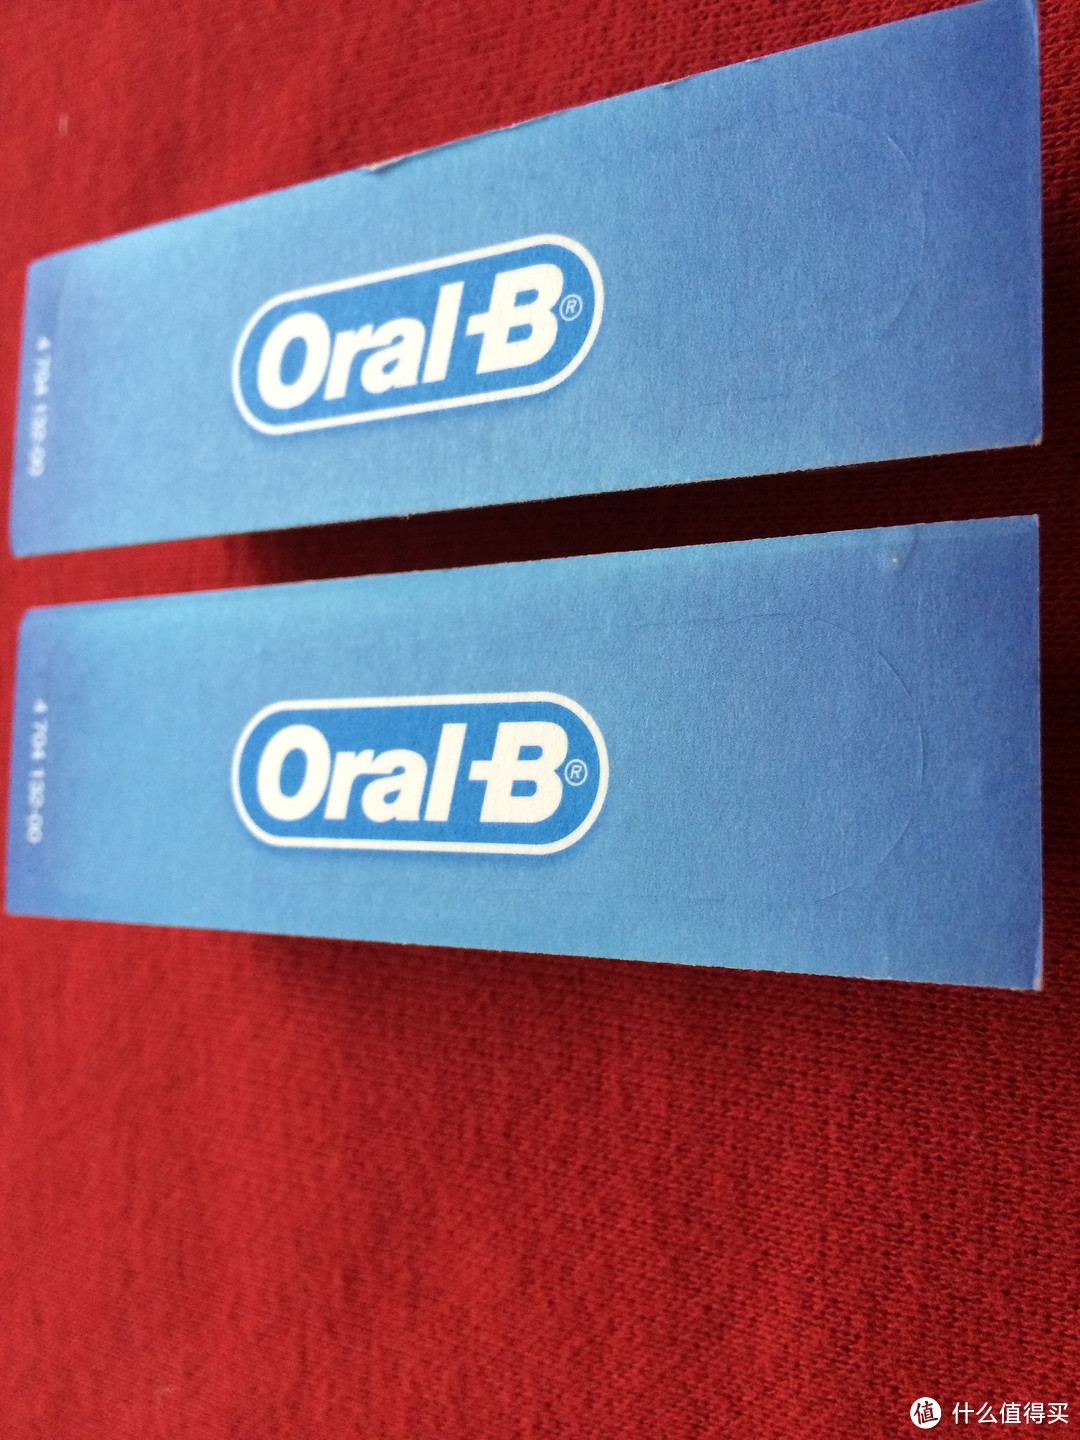 投资健康从正确刷牙开始：Oral-B 欧乐-B PRO 600电动牙刷入手体验